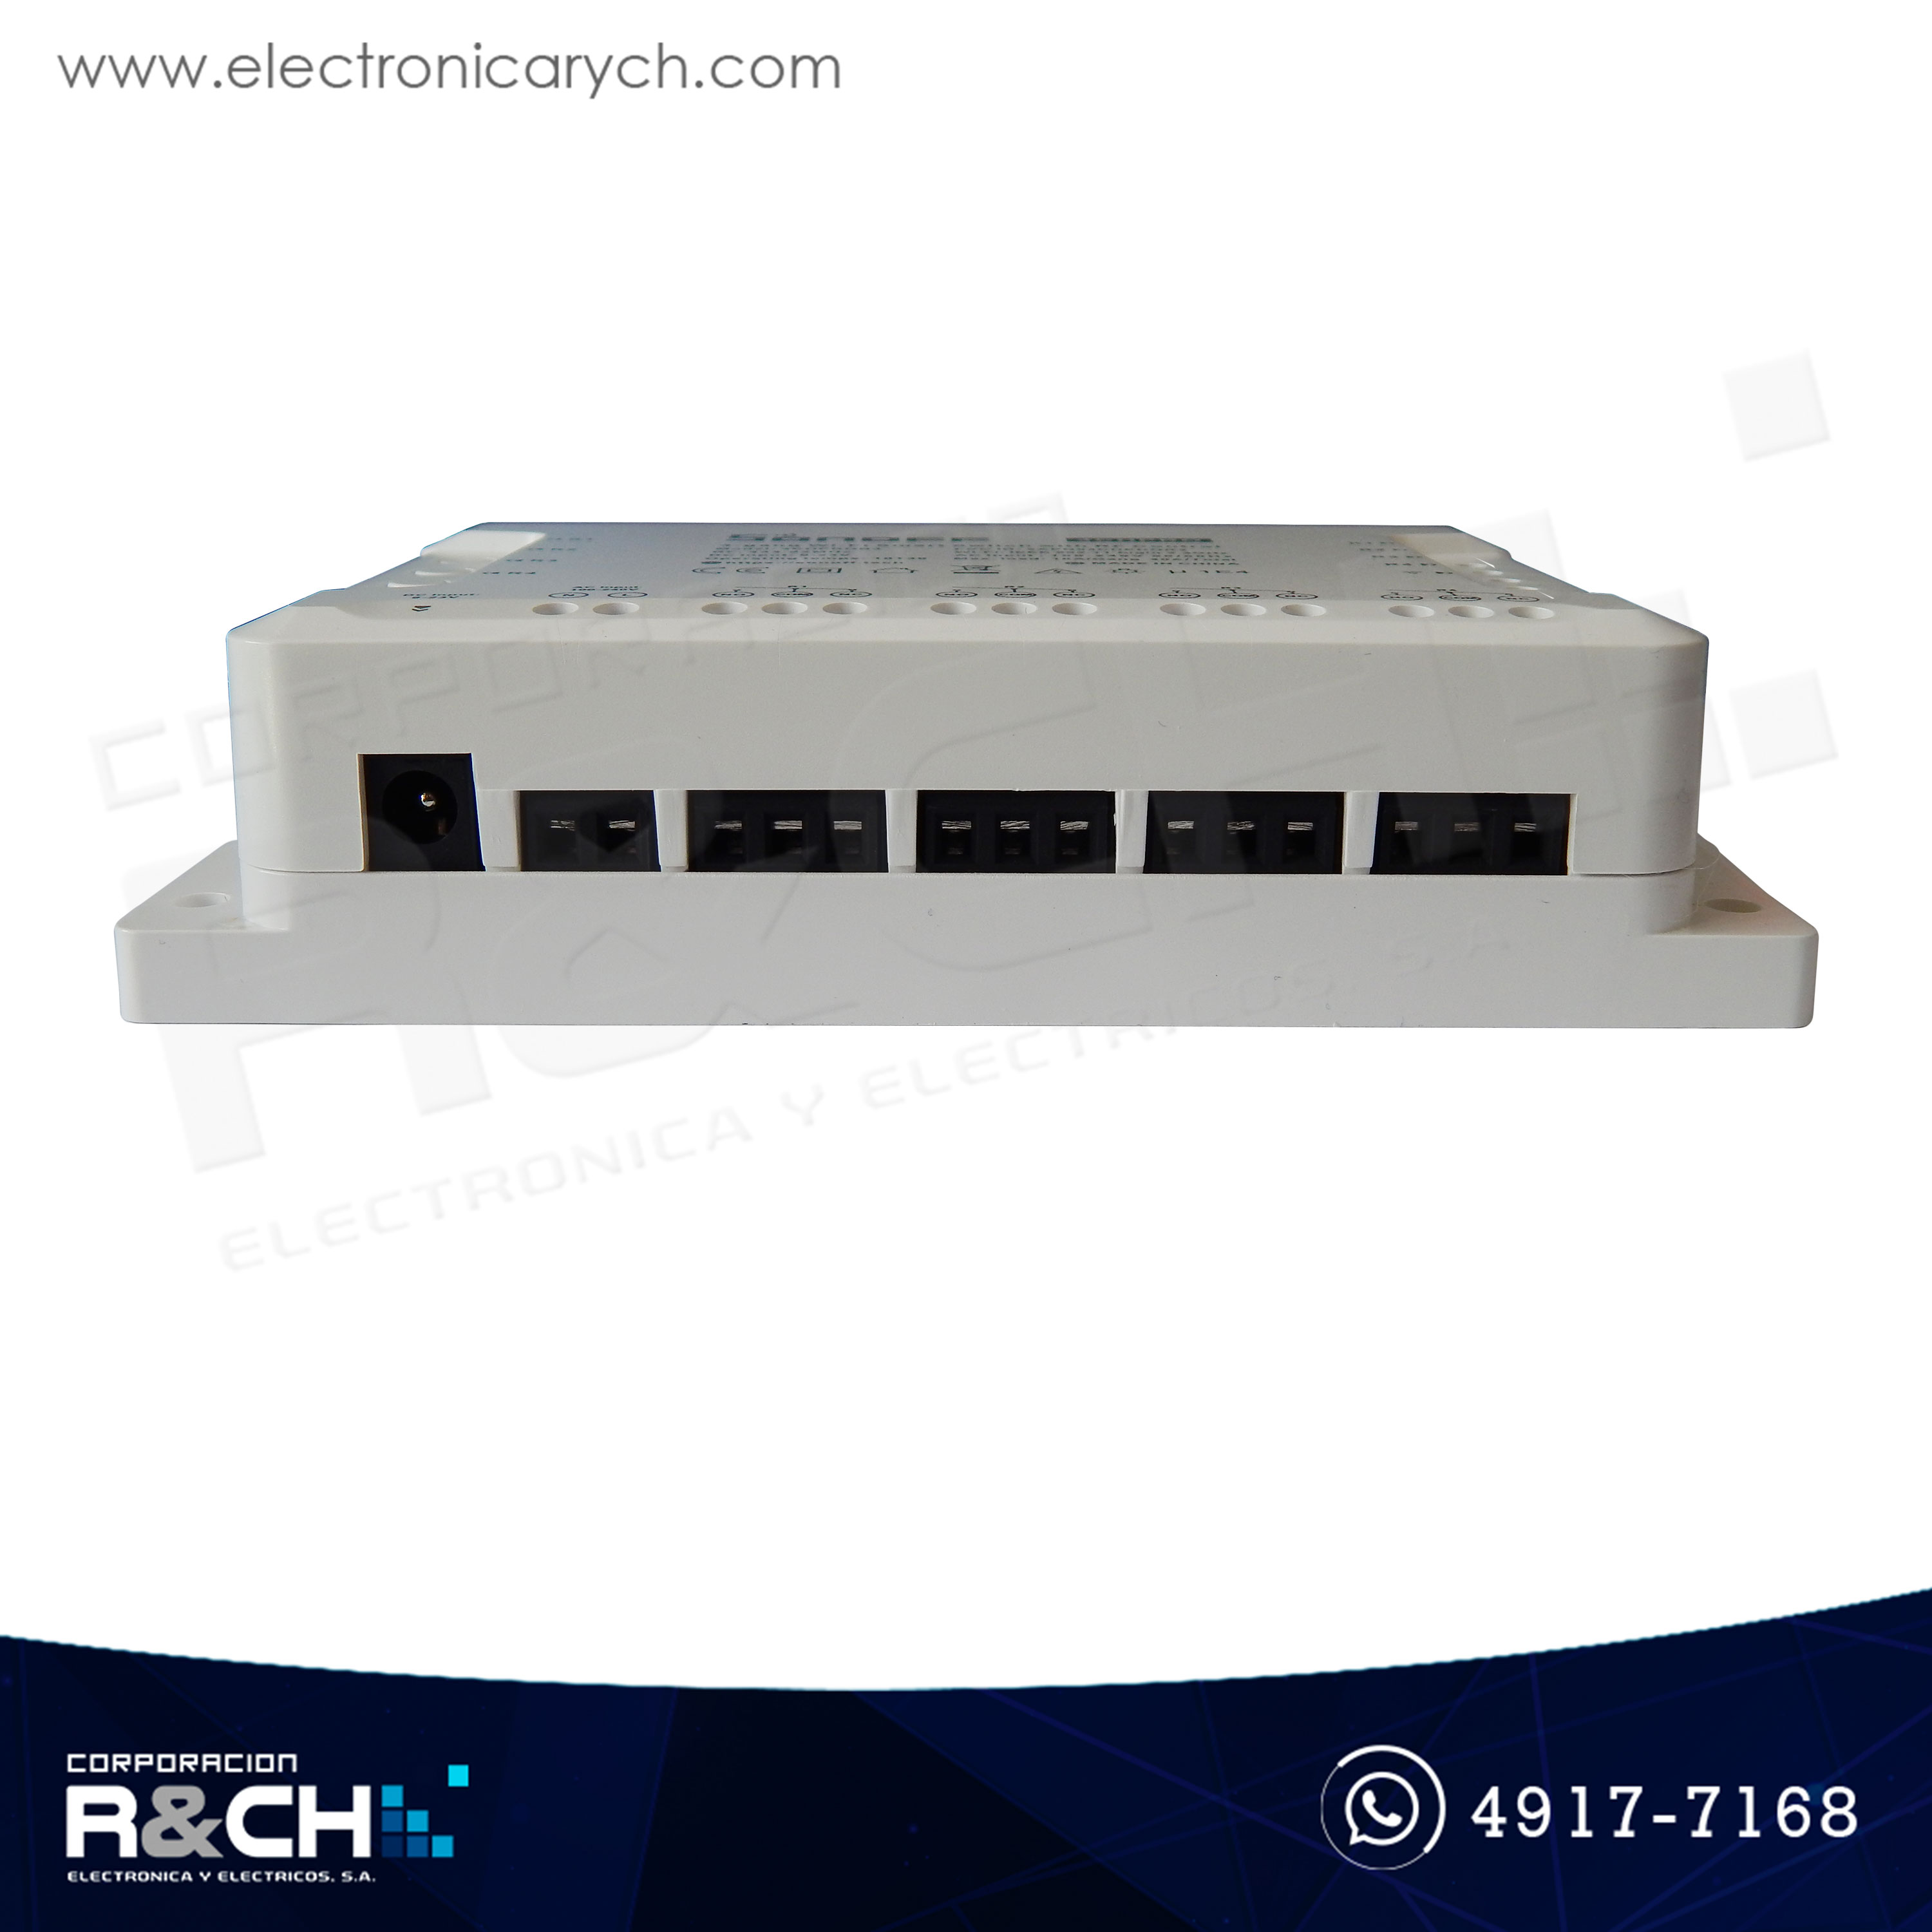 SW-4CHPRO Switch inteligente para domotica 4 canales sonoff  con control RF